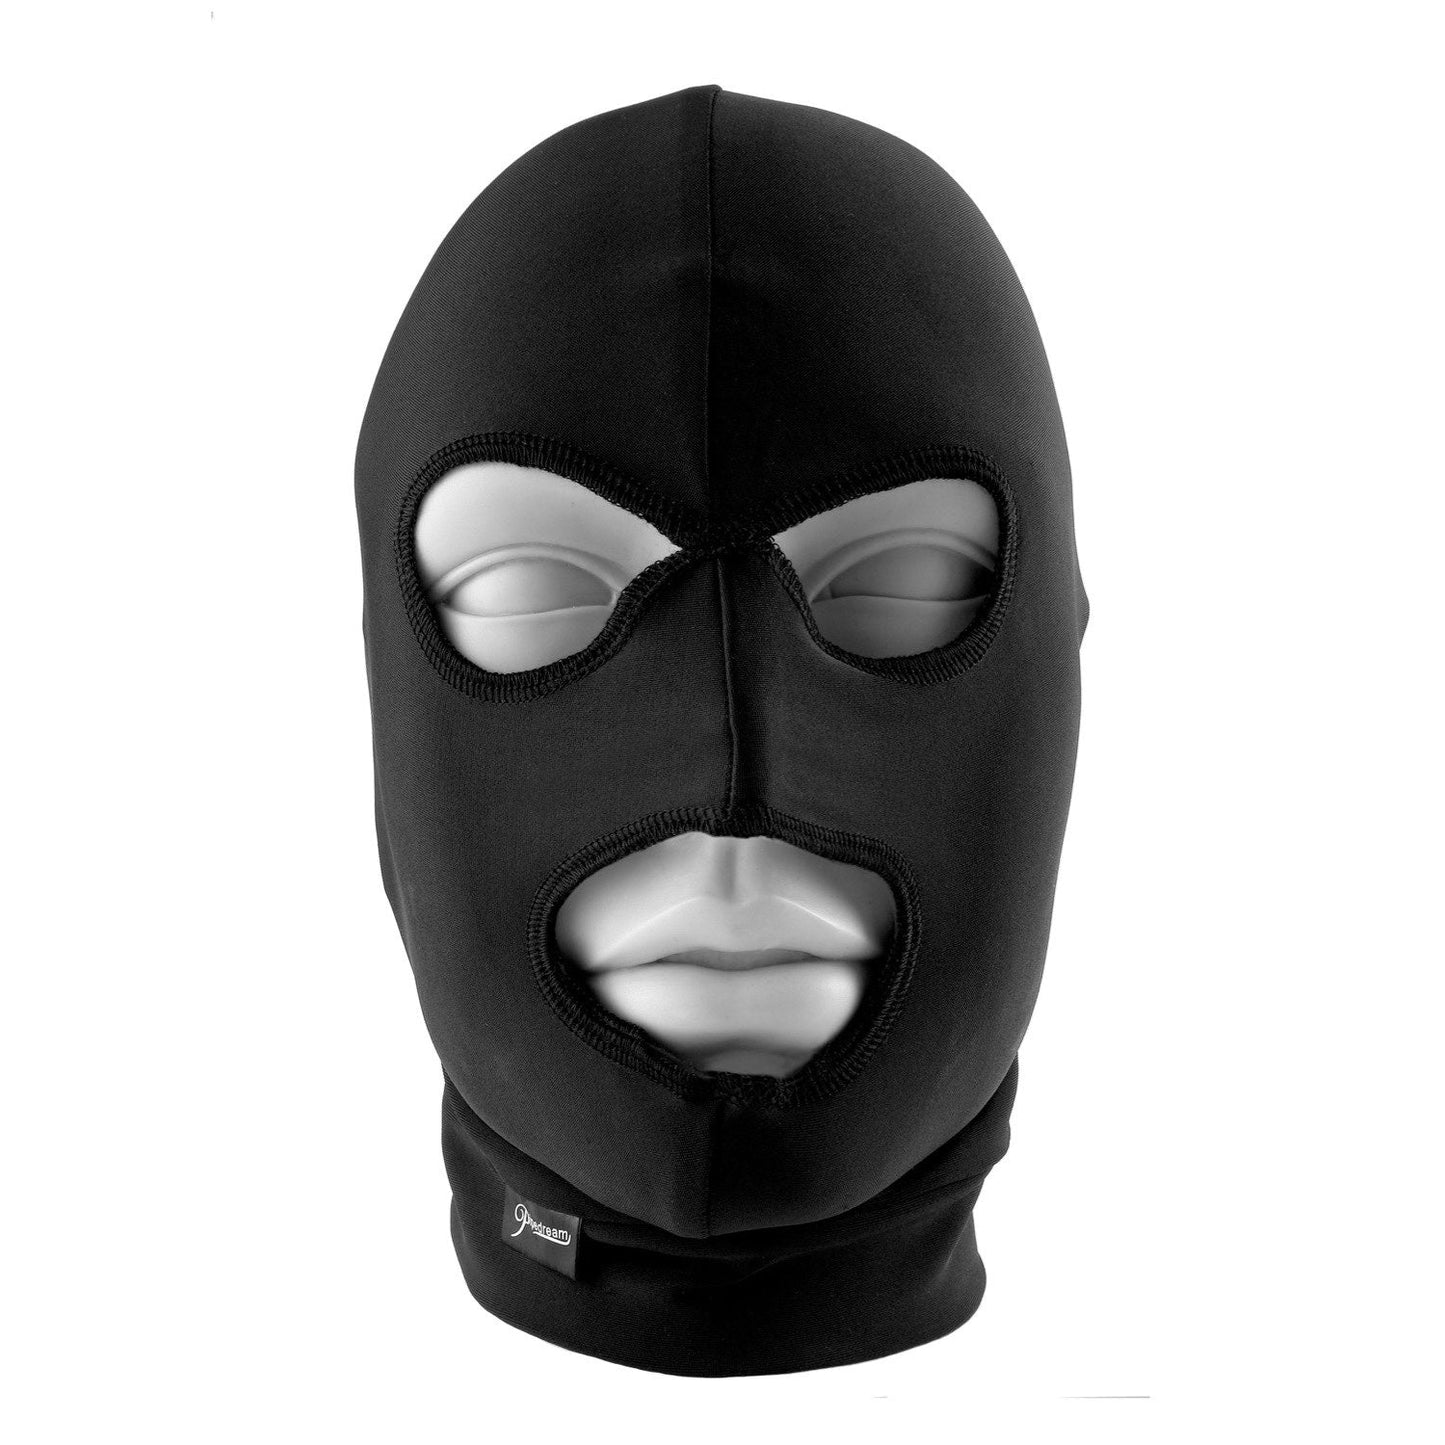 Limited Edition Spandex Hood - Black Bondage Hood